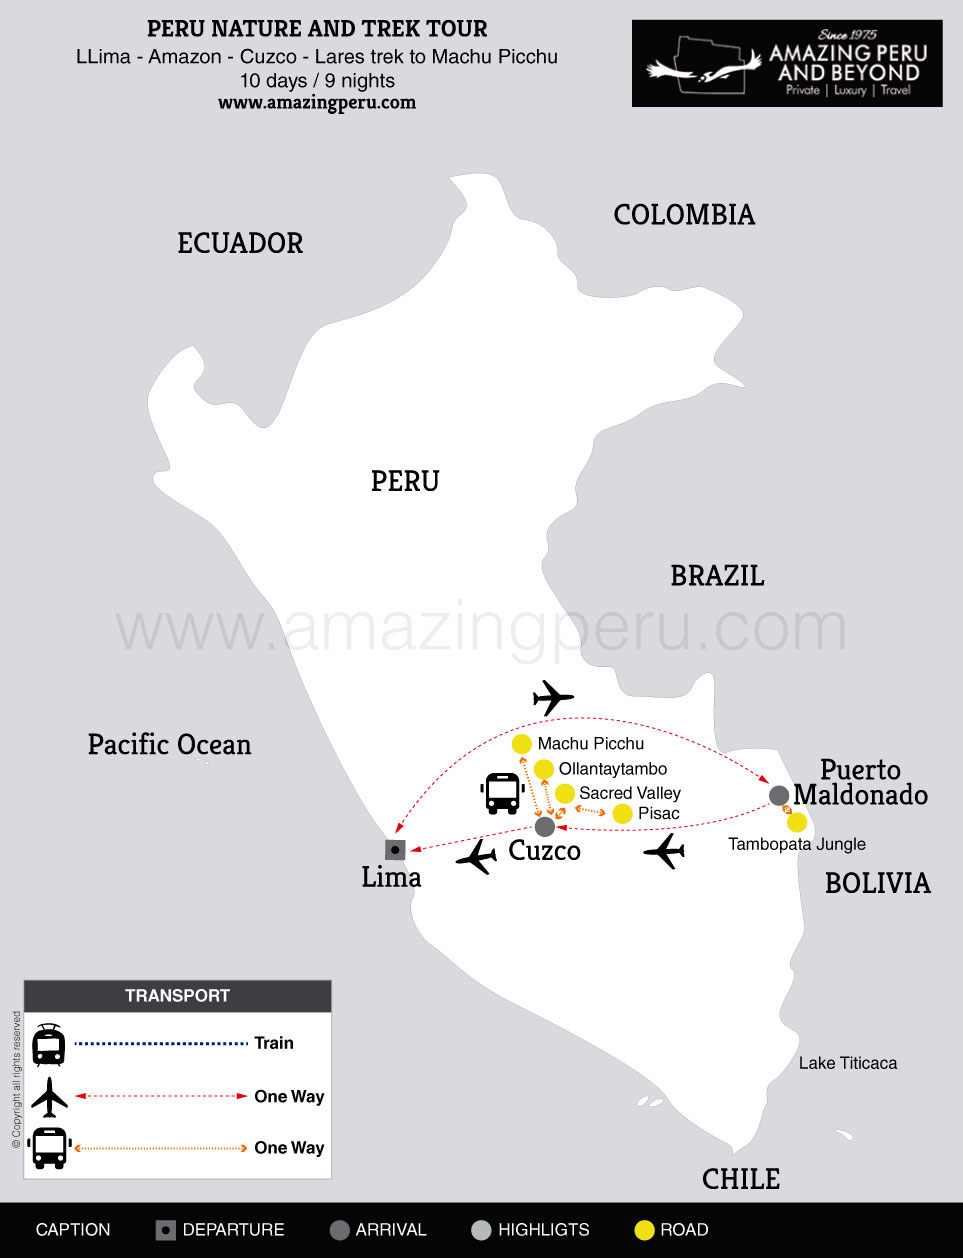 2022 Peru Nature and Trek tour - 10 days / 9 nights.